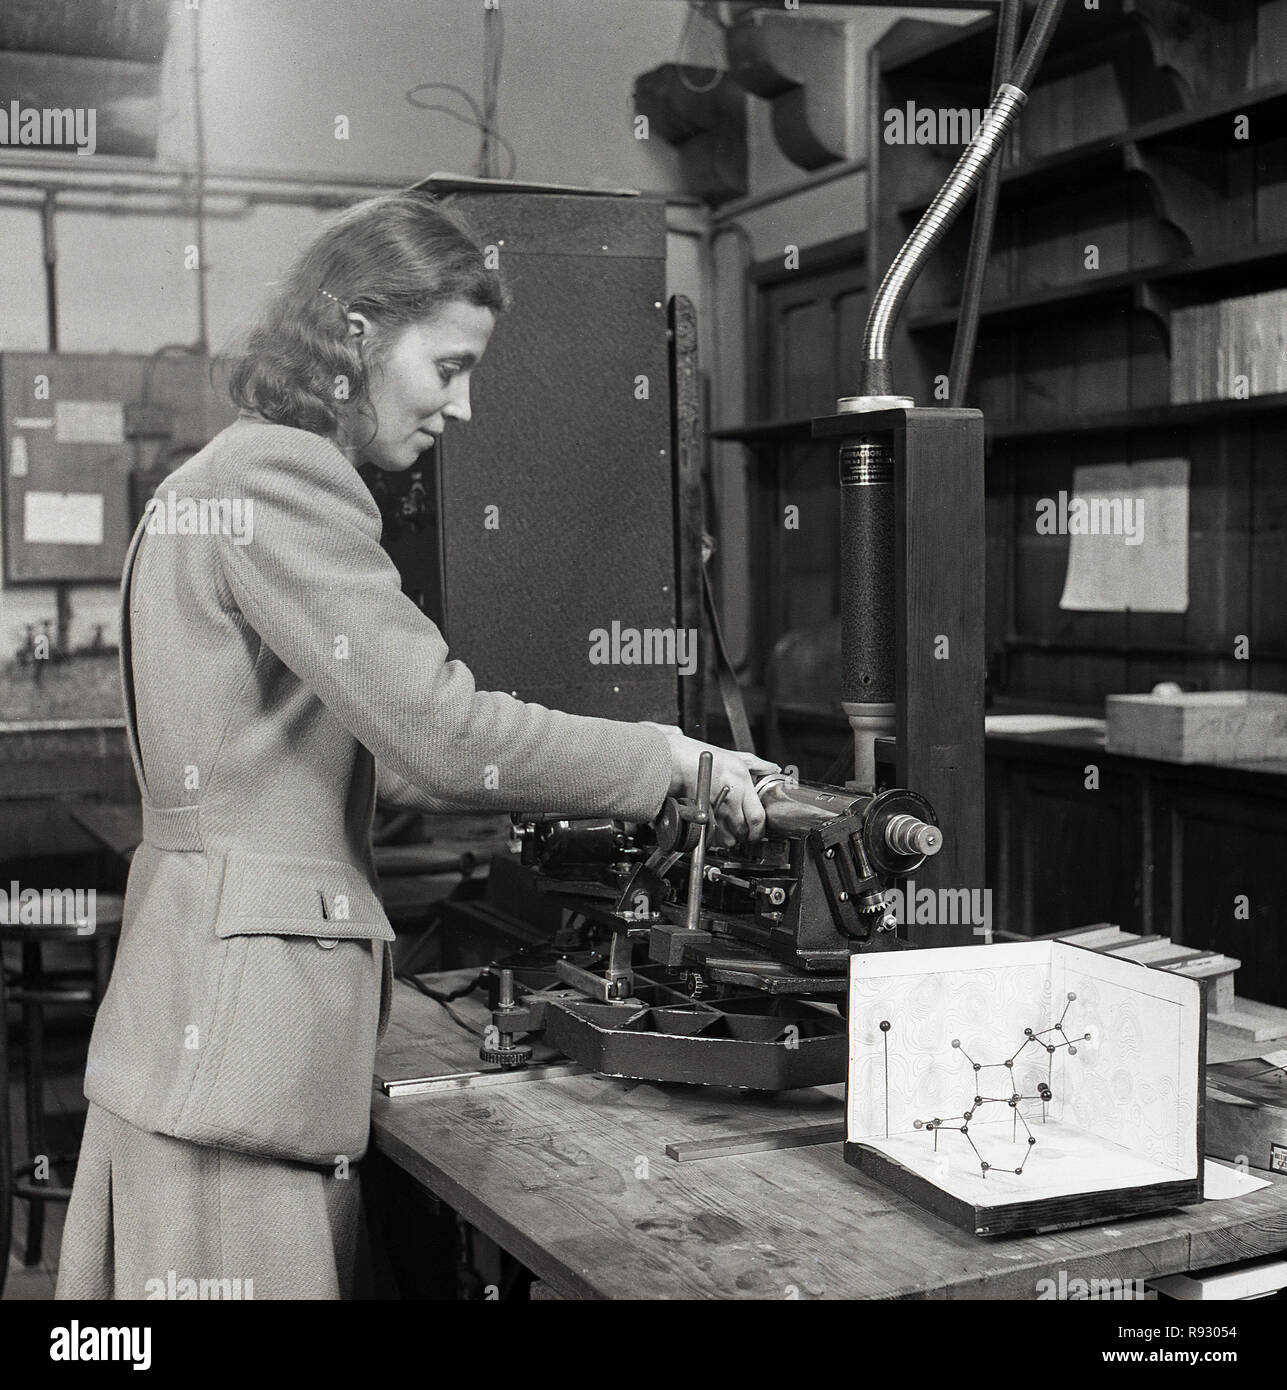 1948, historiques, une femelle scientst de recherche travaillant à l'Université d'Oxford, Angleterre, Royaume-Uni conduire une expérience. Banque D'Images